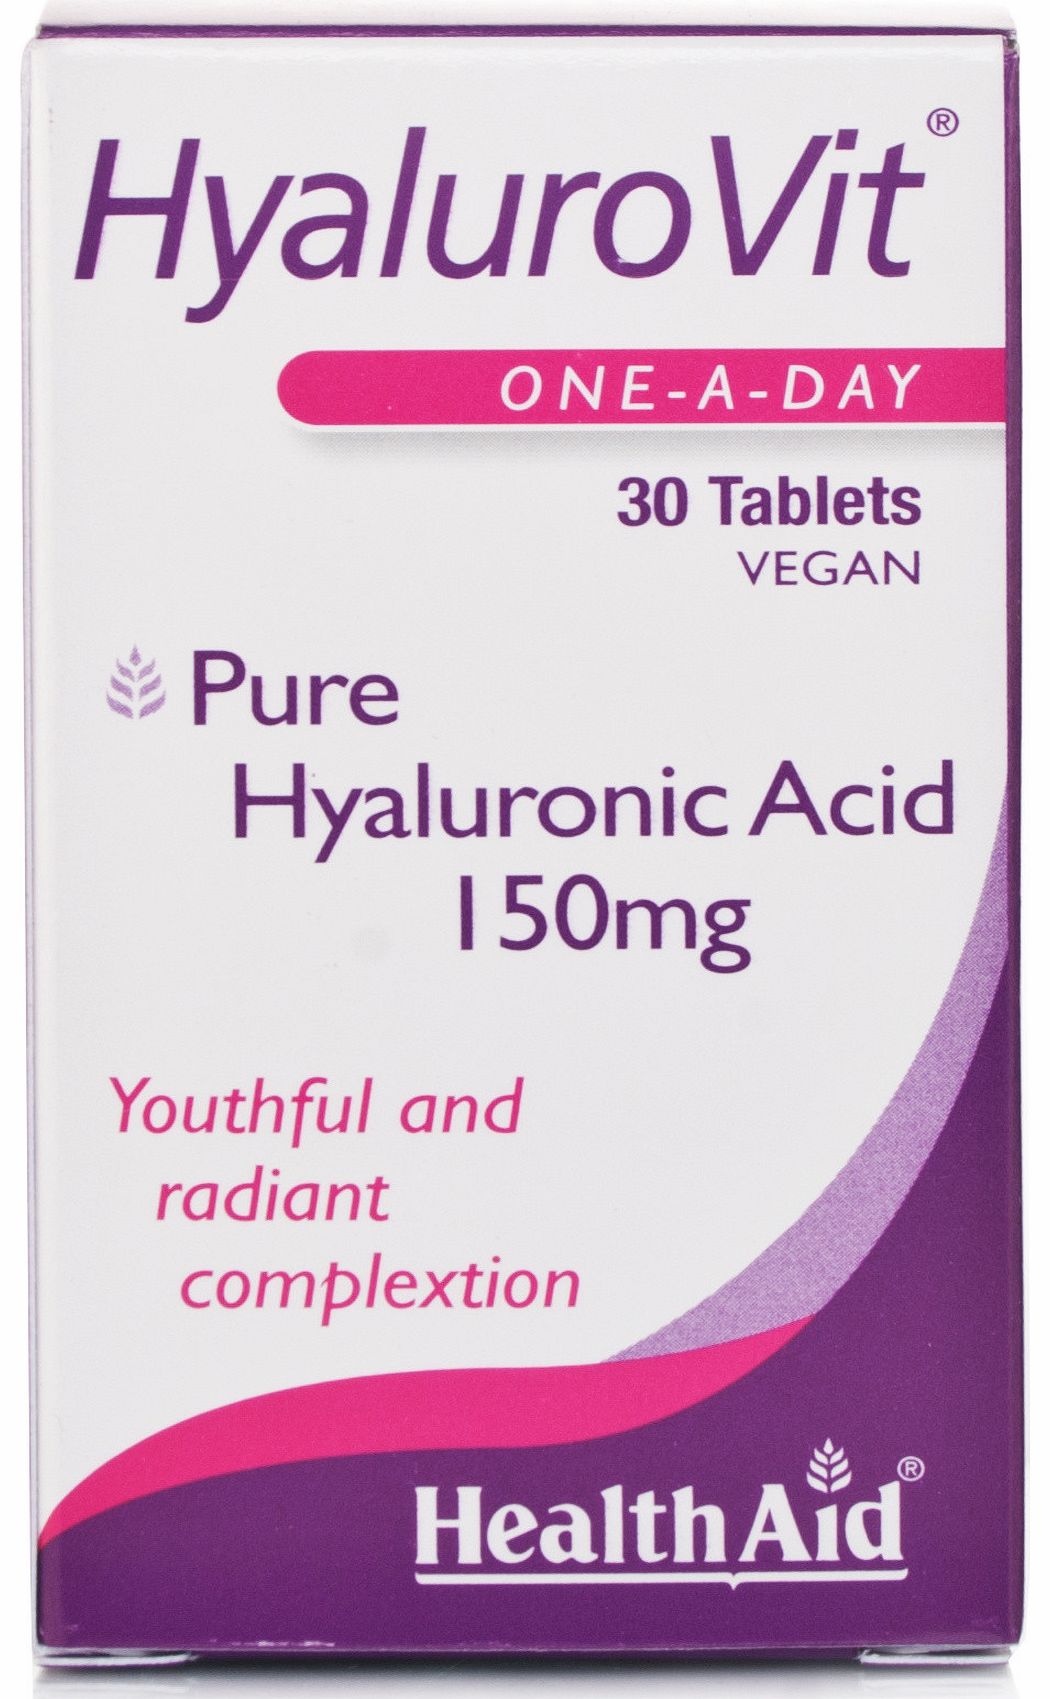 HyaluroVit tablets